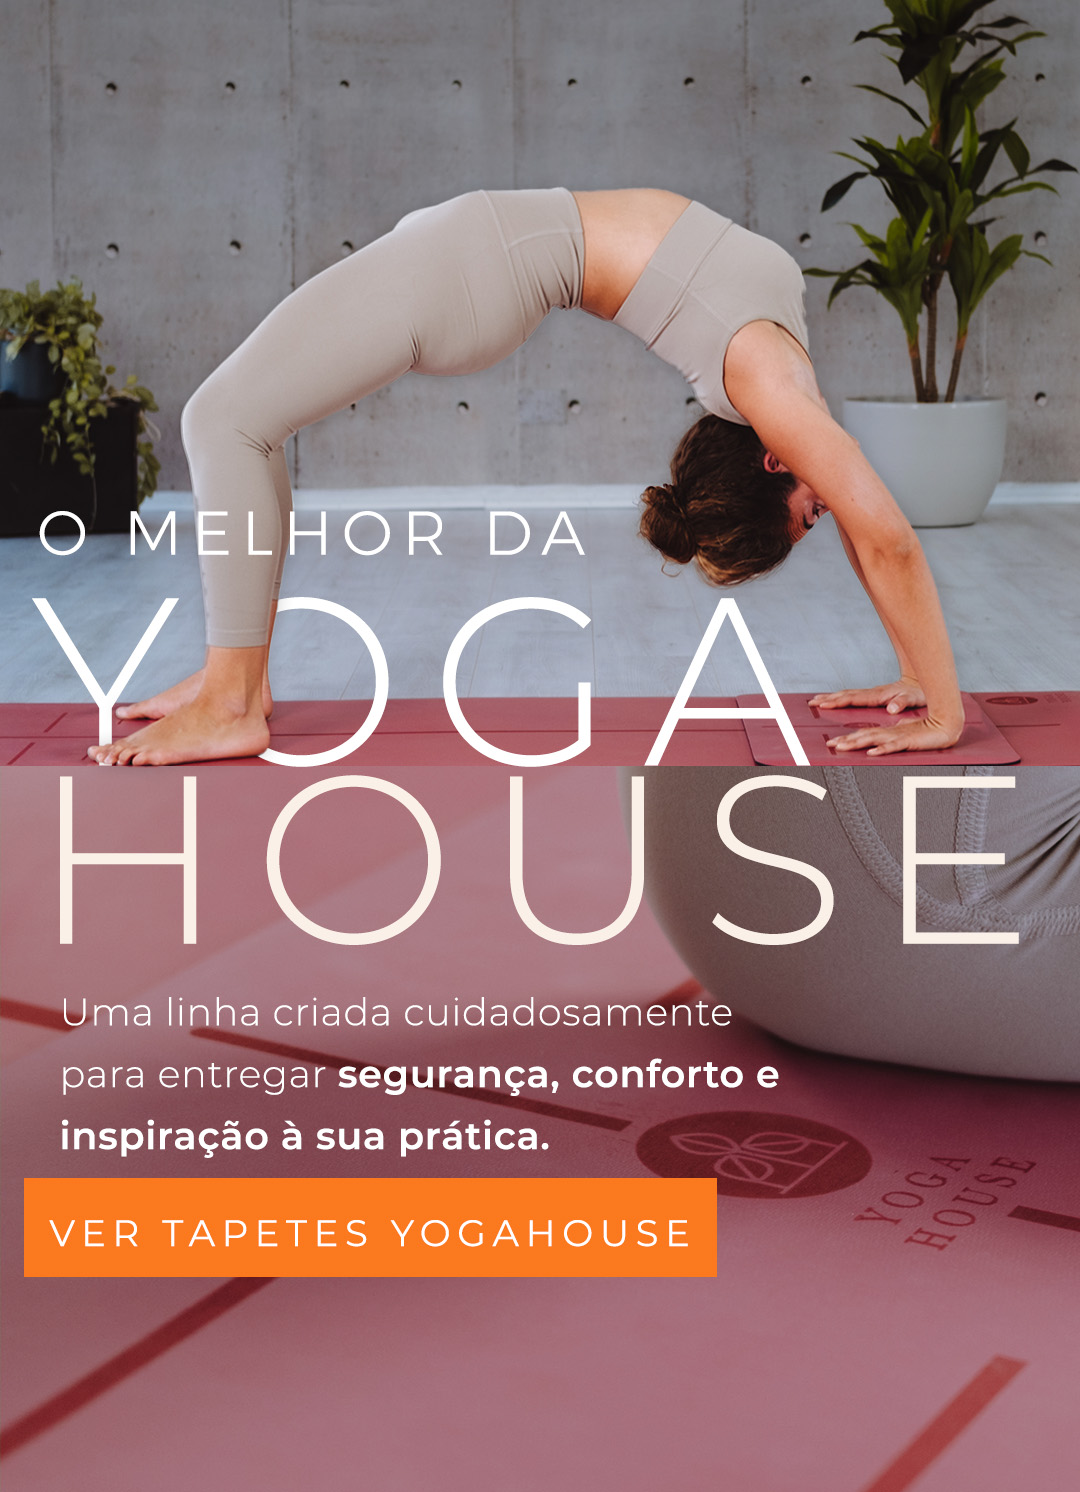 Yoga House - Os melhores tapetes de yoga do mundo